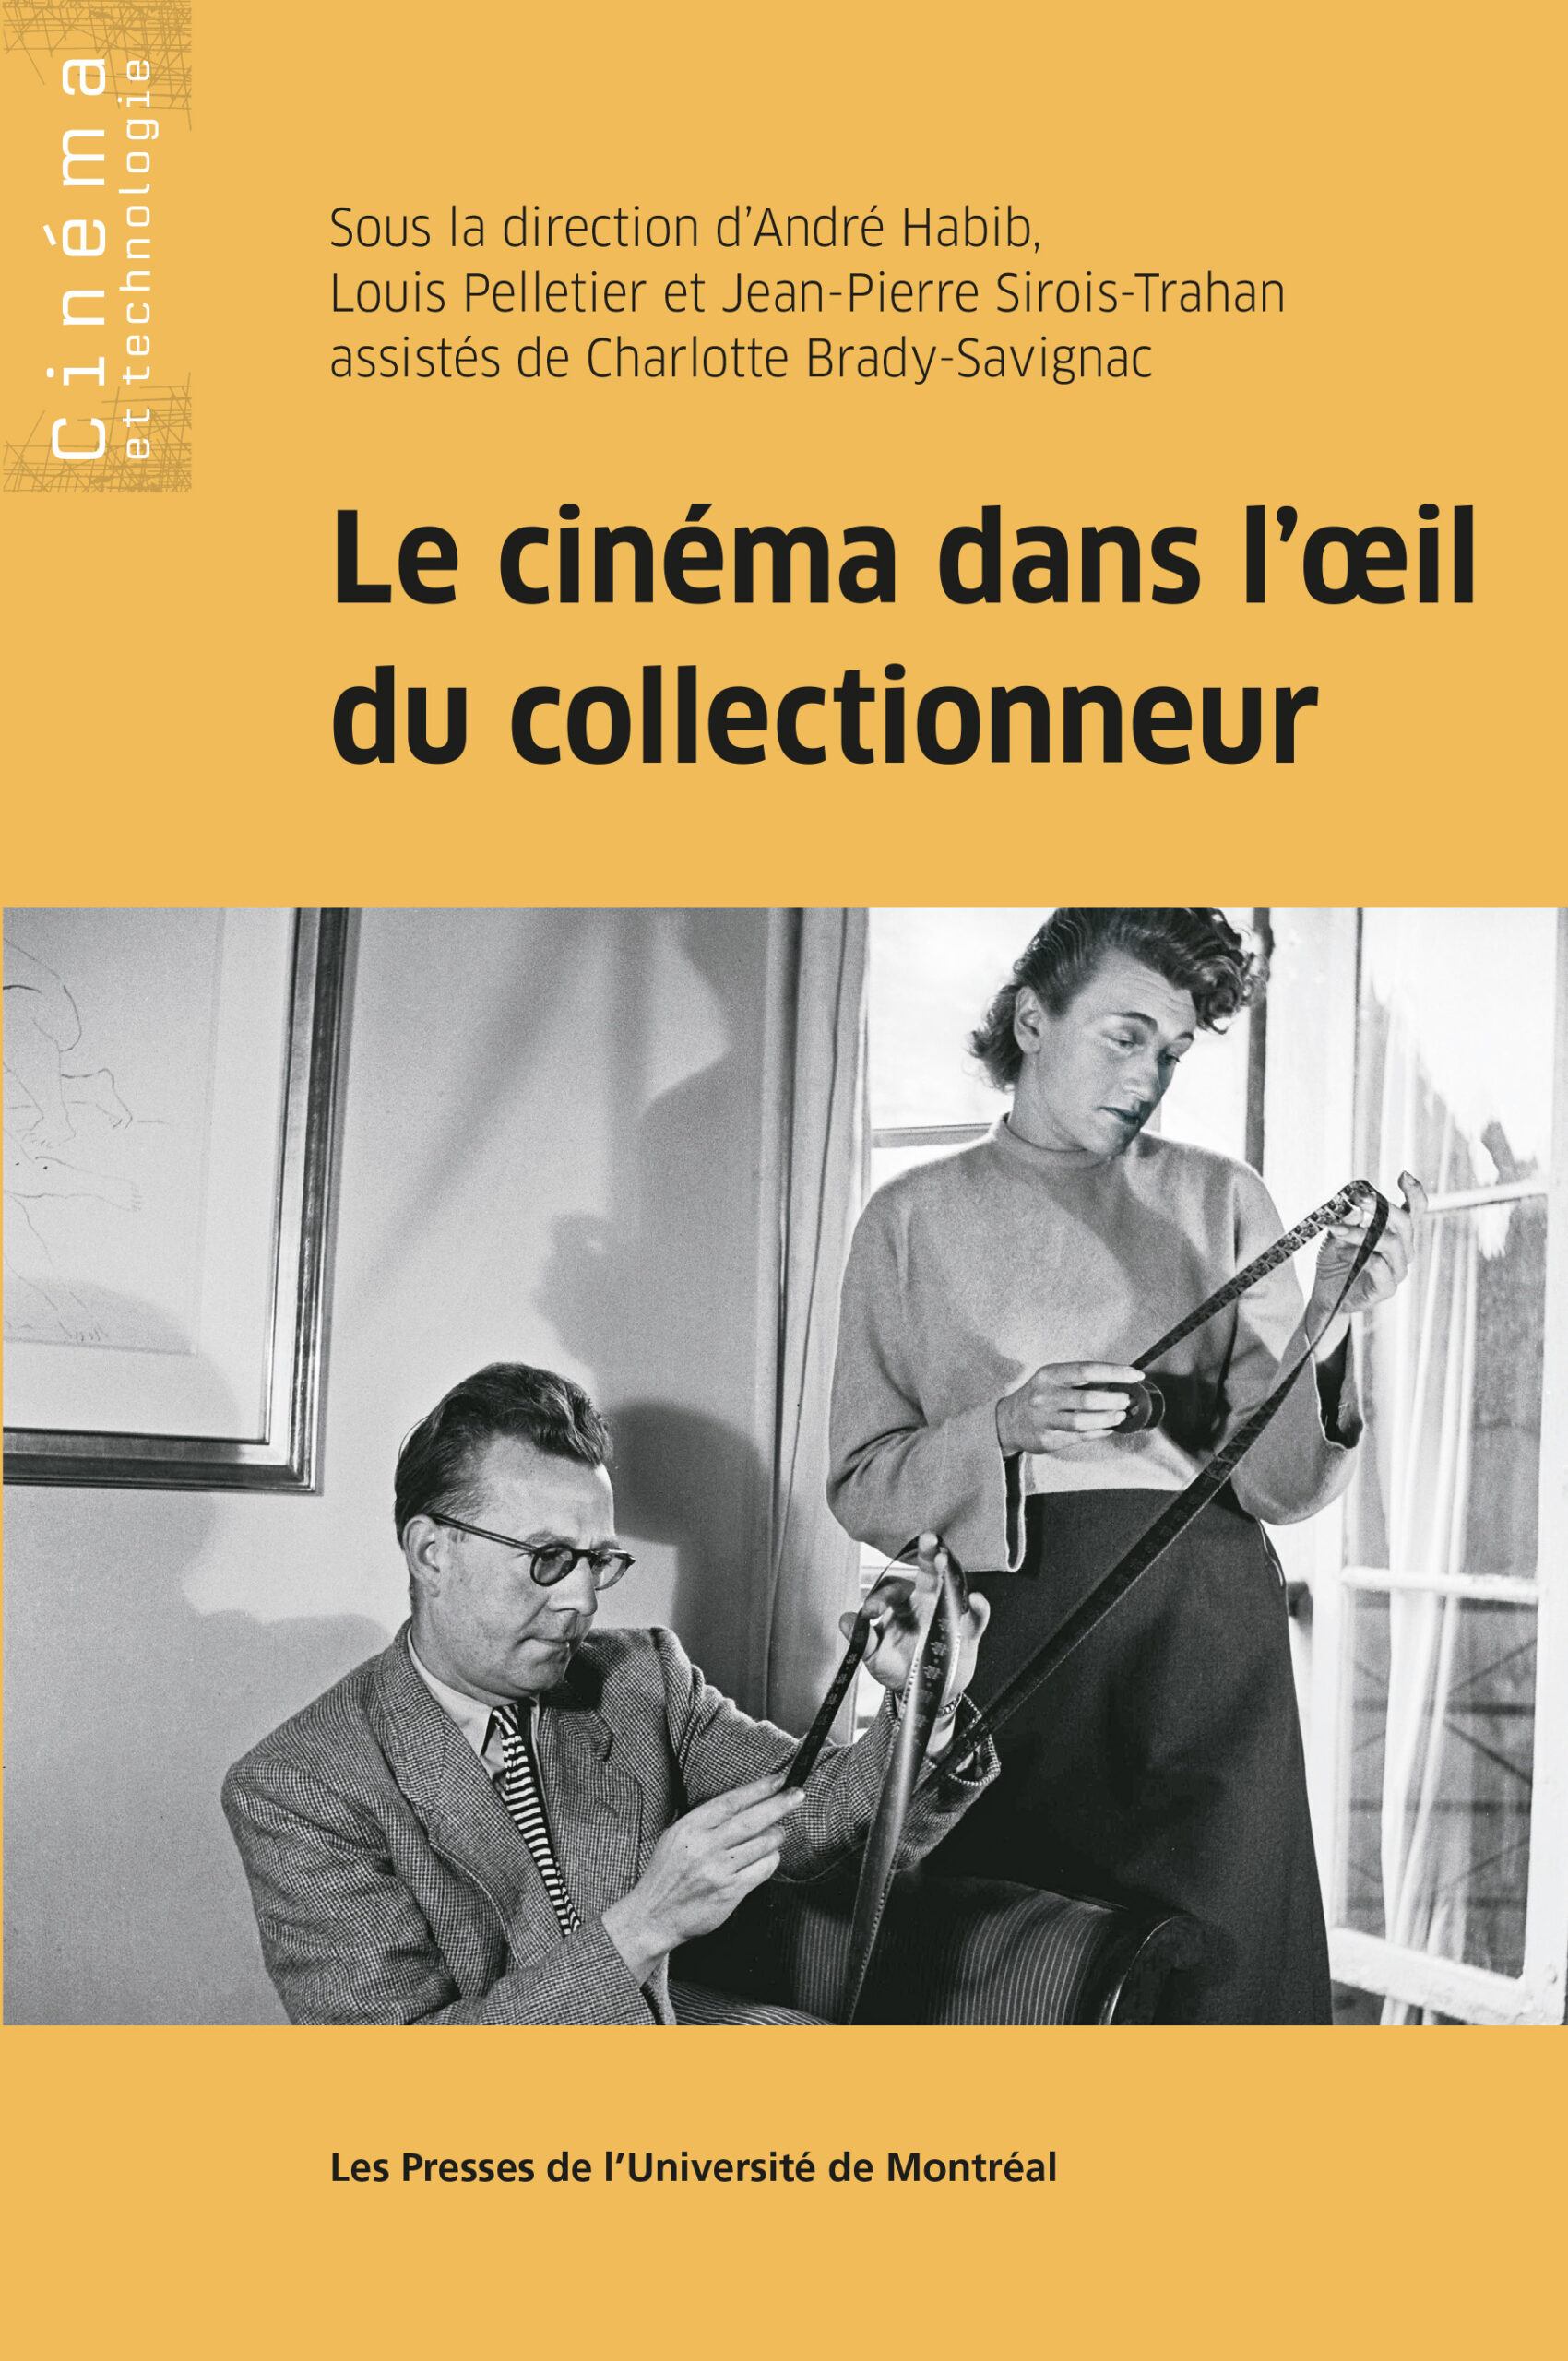 You are currently viewing Le cinéma dans l’oeil du collectionneur